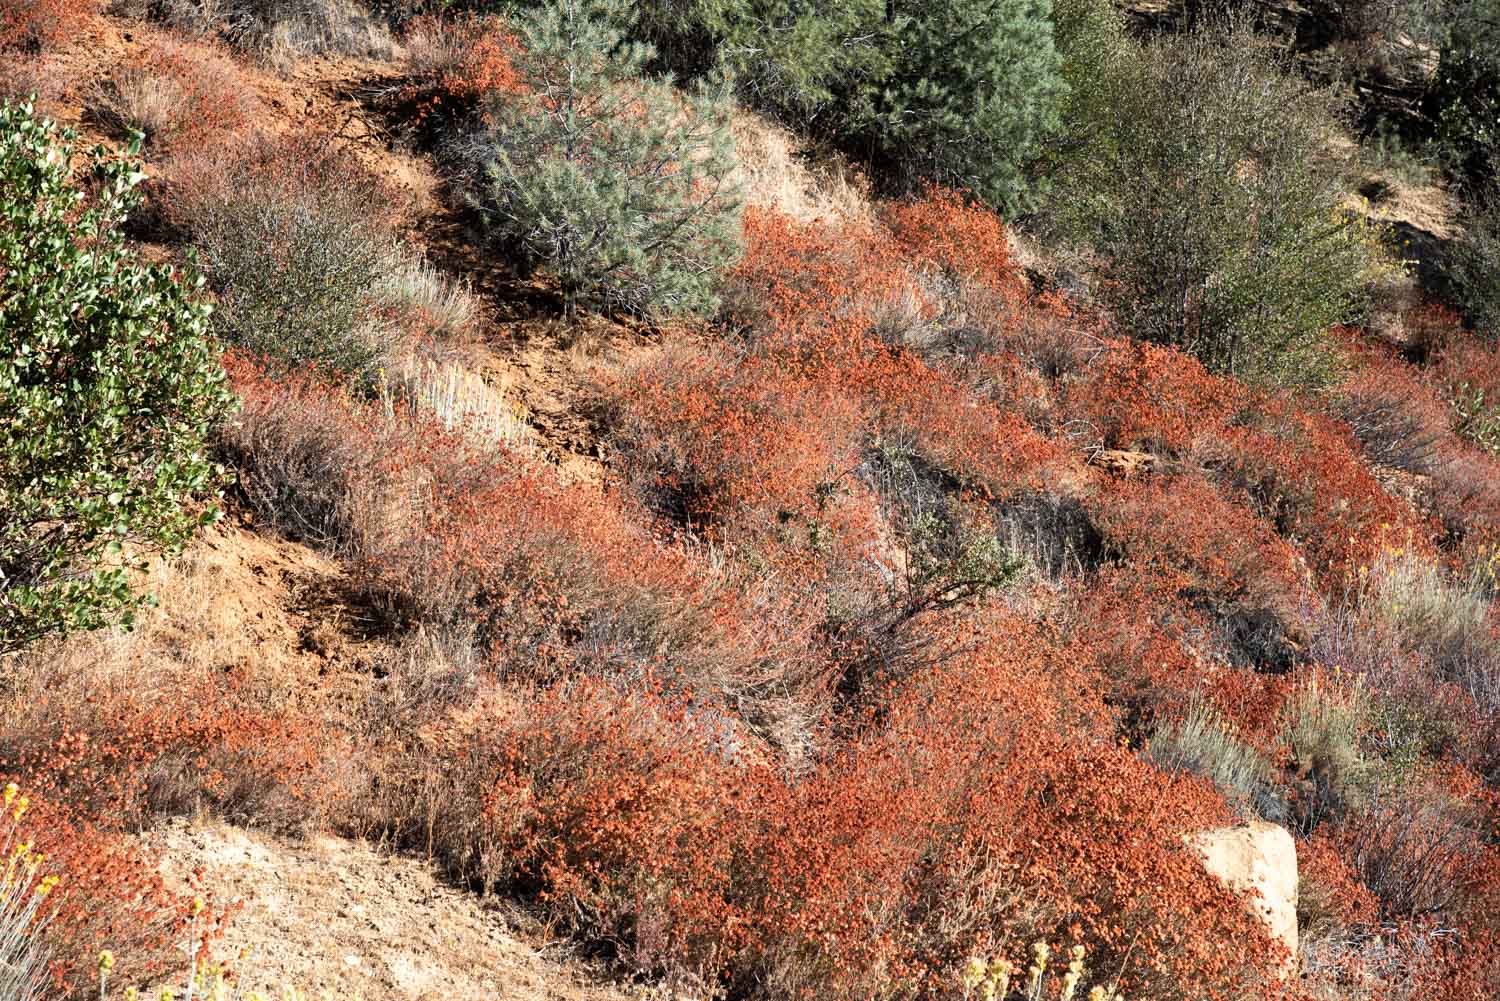 California Buckwheat (Eriogonum fasciculatum)